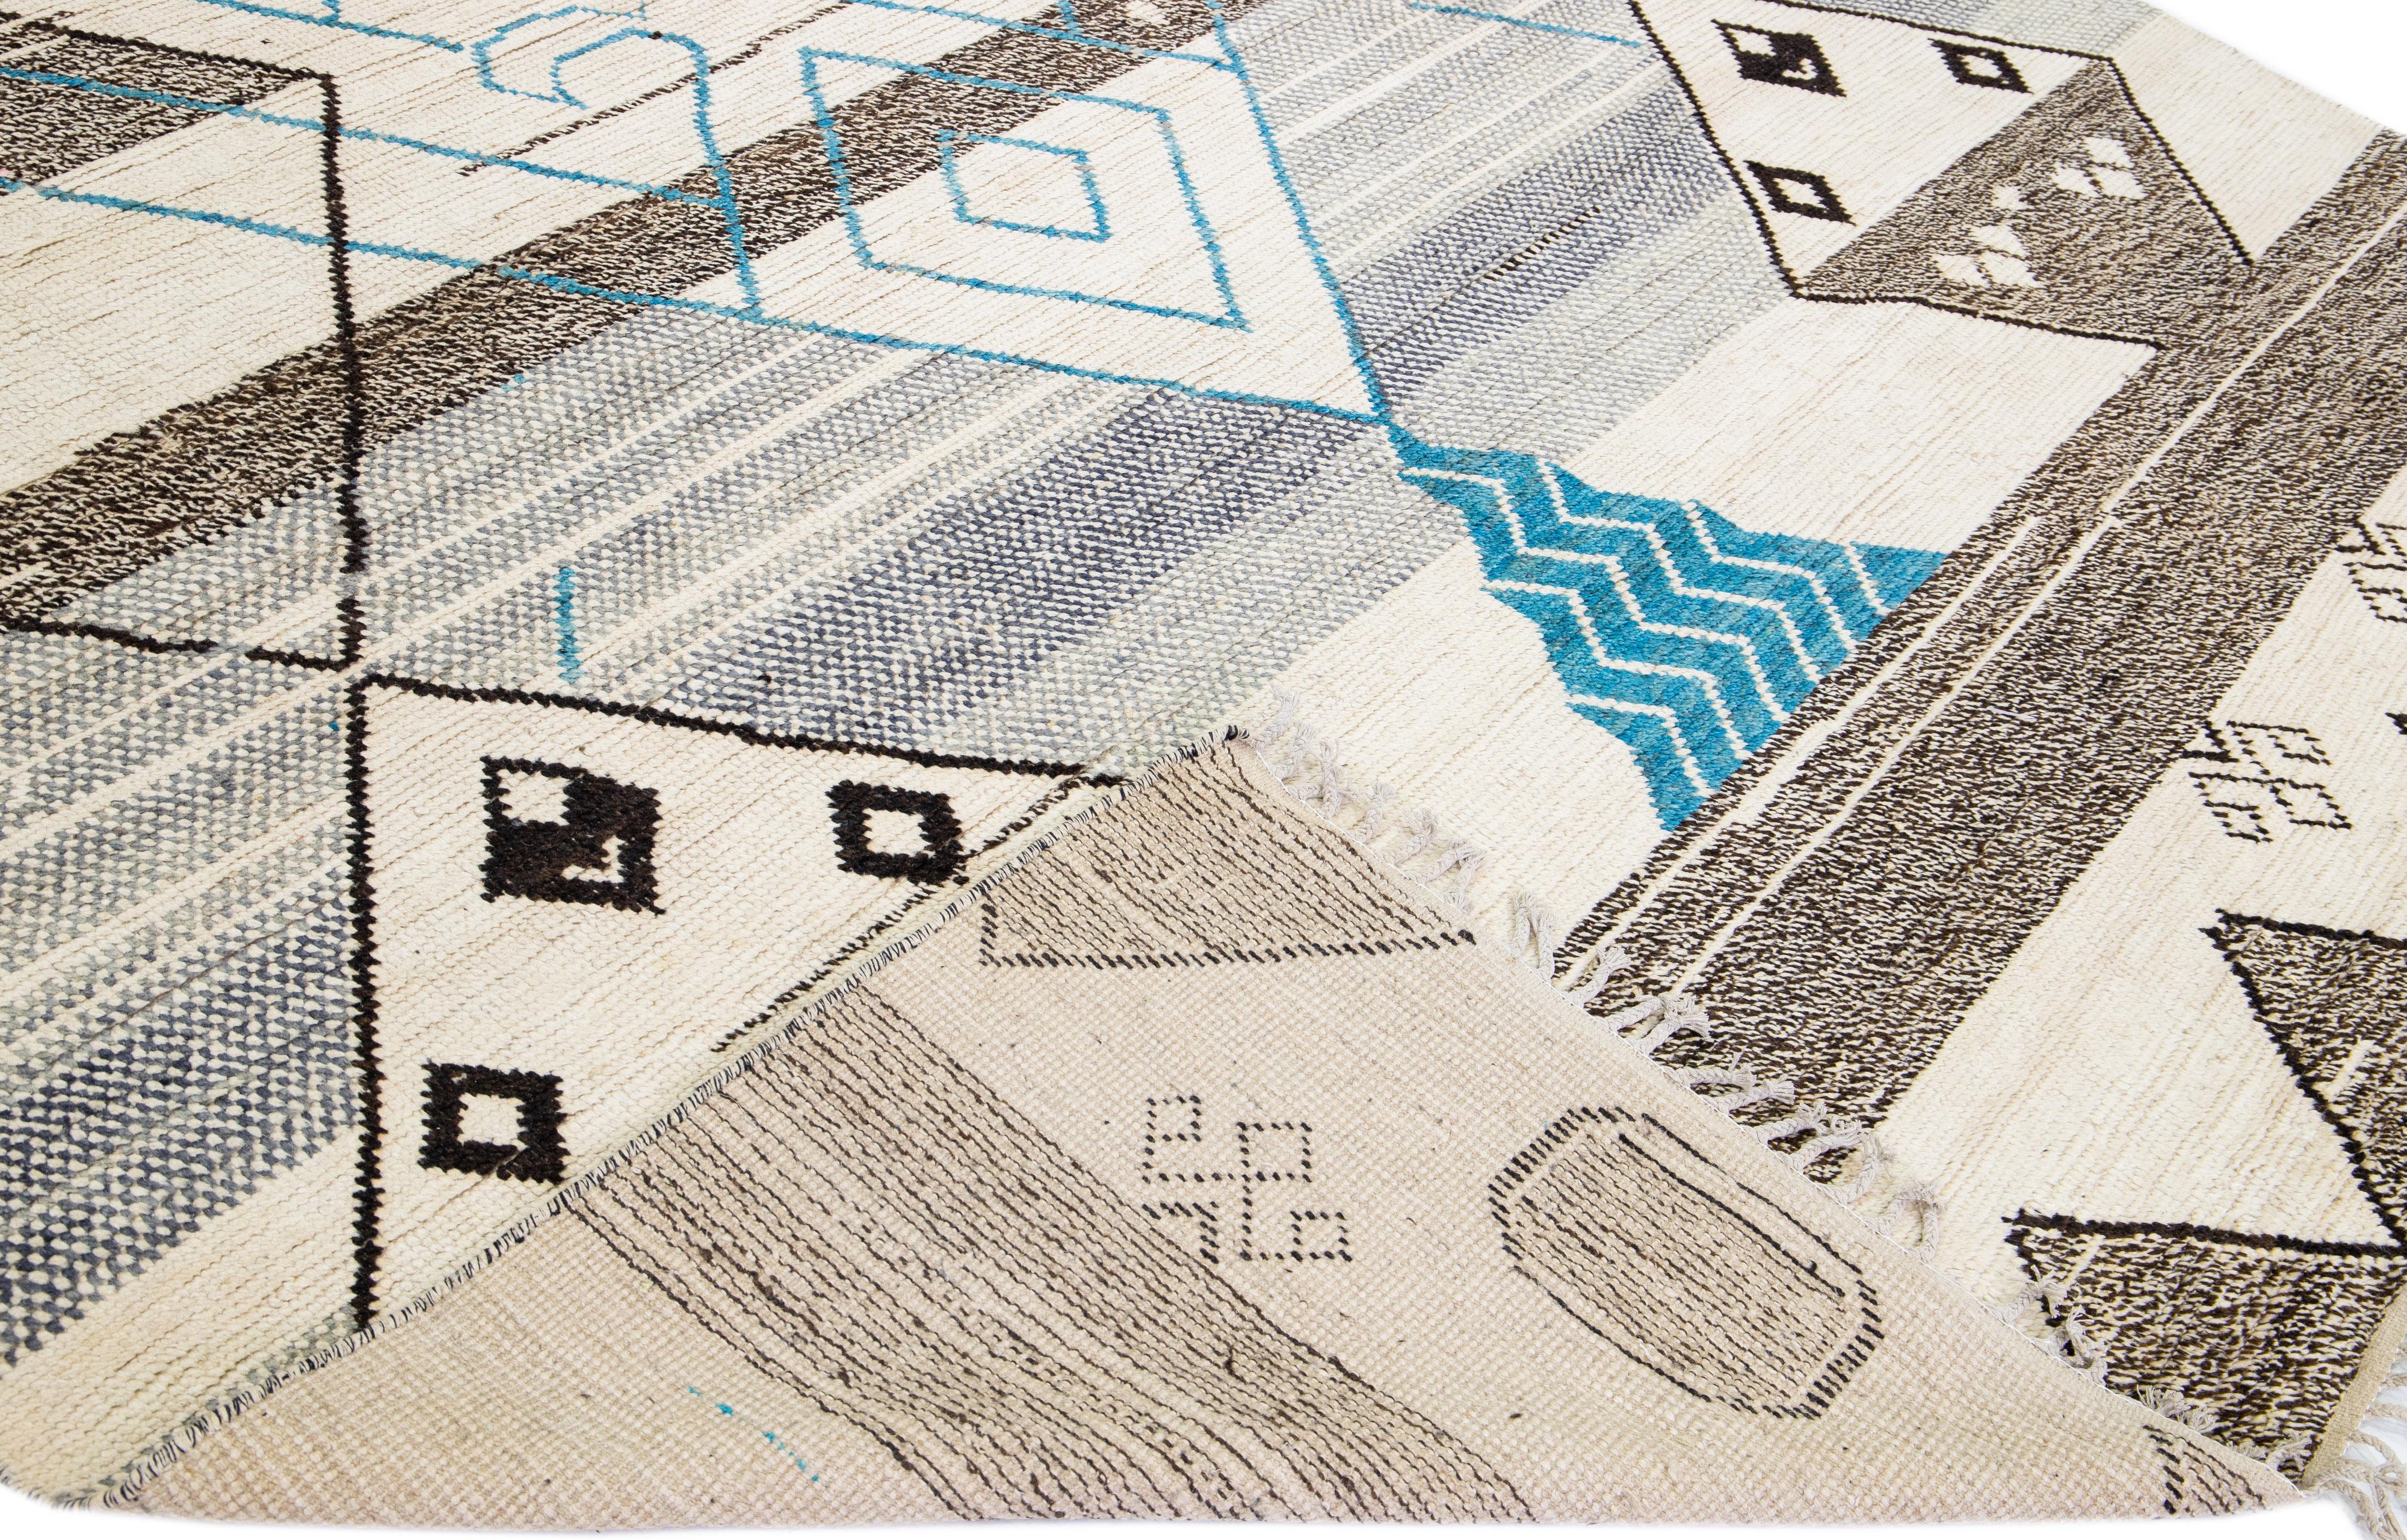 Magnifique tapis moderne de style marocain en laine nouée à la main avec un champ beige. Cette pièce a des accents gris, bruns et bleus dans un magnifique motif tribal avec des franges sur les extrémités supérieure et inférieure.

Ce tapis mesure